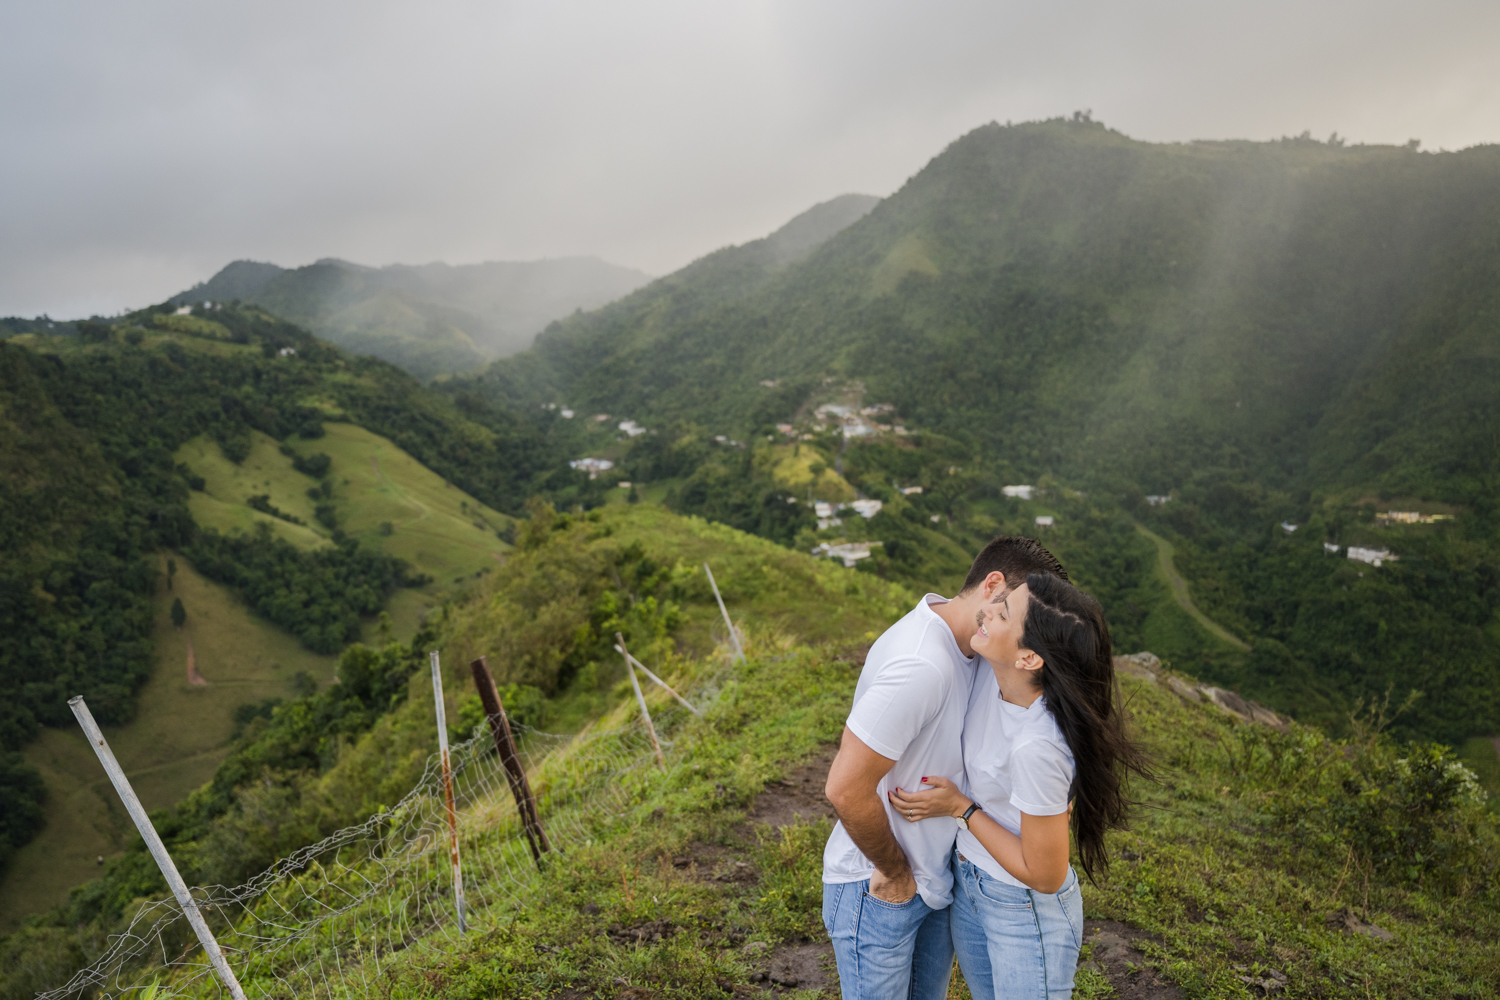 sesion de fotos love story en cerro mime orocovis puerto rico